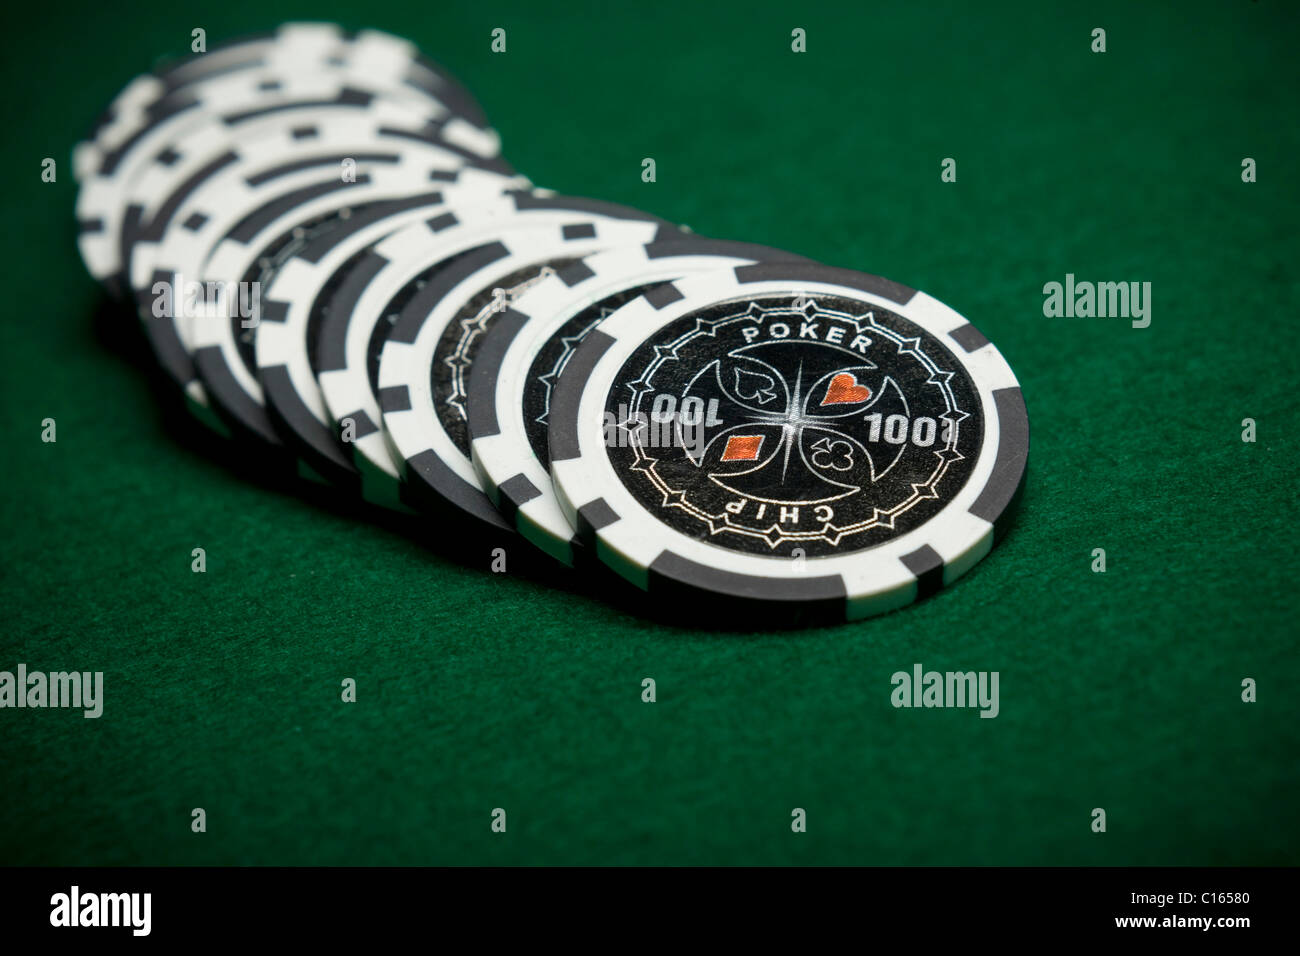 Black poker chips on green felt Stock Photo